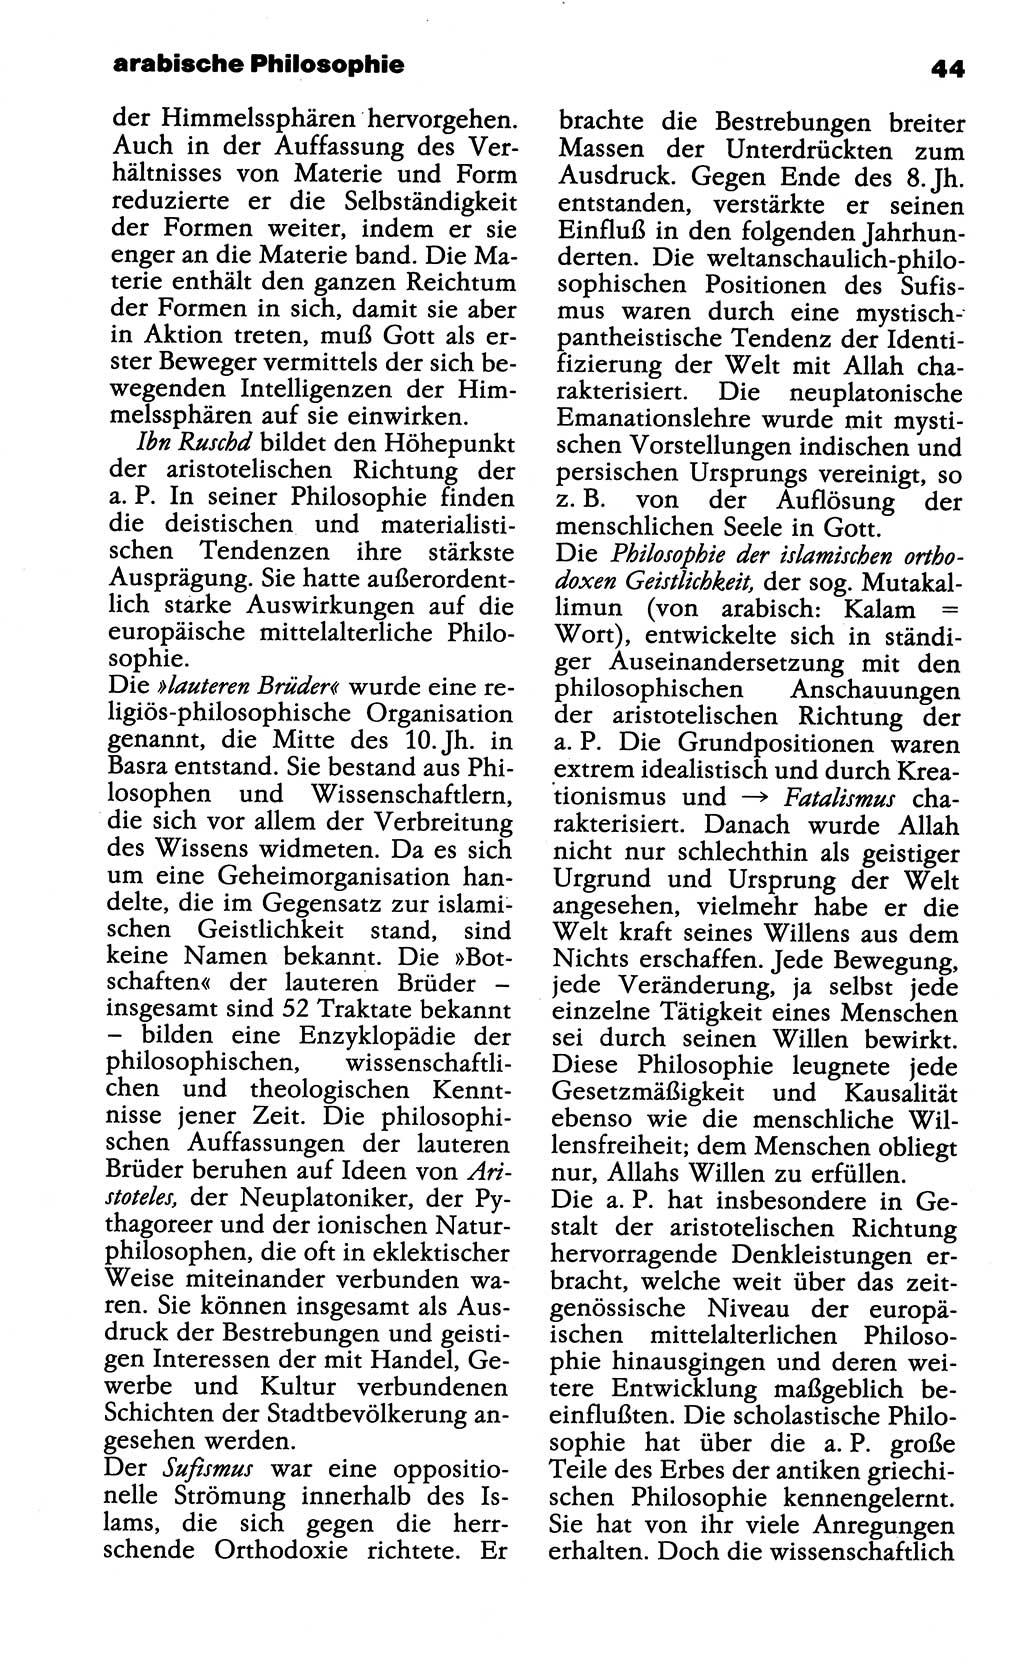 Wörterbuch der marxistisch-leninistischen Philosophie [Deutsche Demokratische Republik (DDR)] 1985, Seite 44 (Wb. ML Phil. DDR 1985, S. 44)